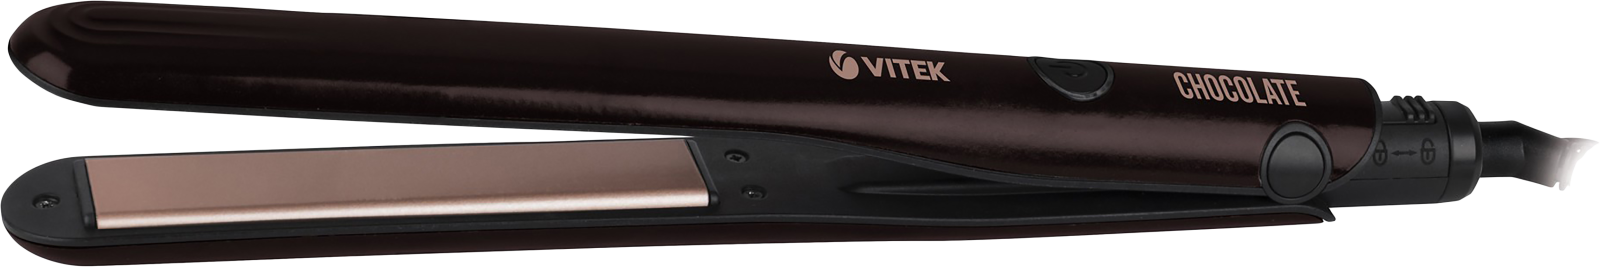 Выпрямитель Vitek VT-2284